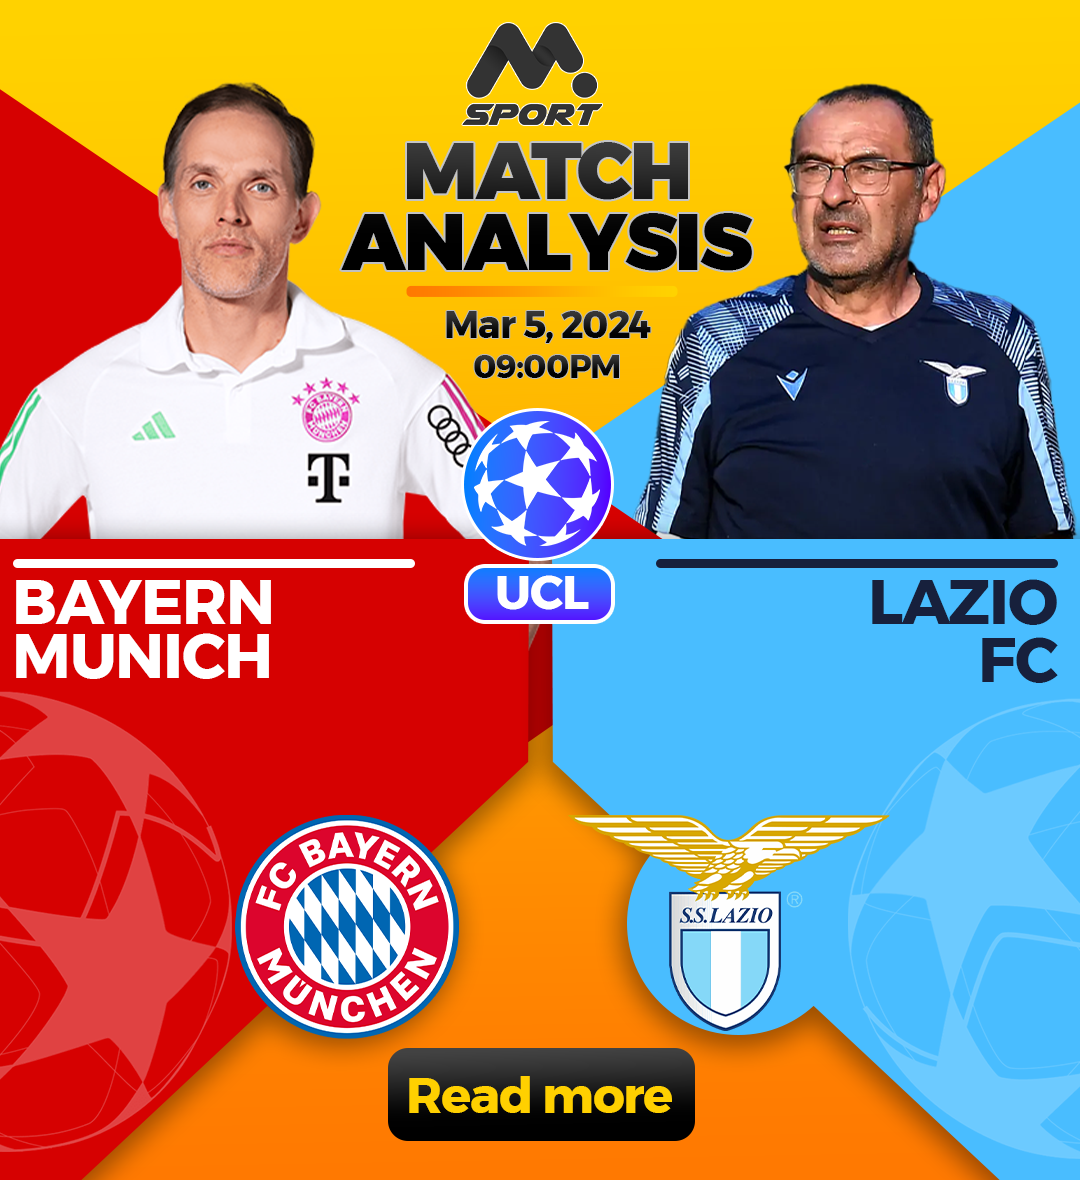 Clash of Titans: Bayern Munich vs. Lazio - Champions League Last-16 Second Leg